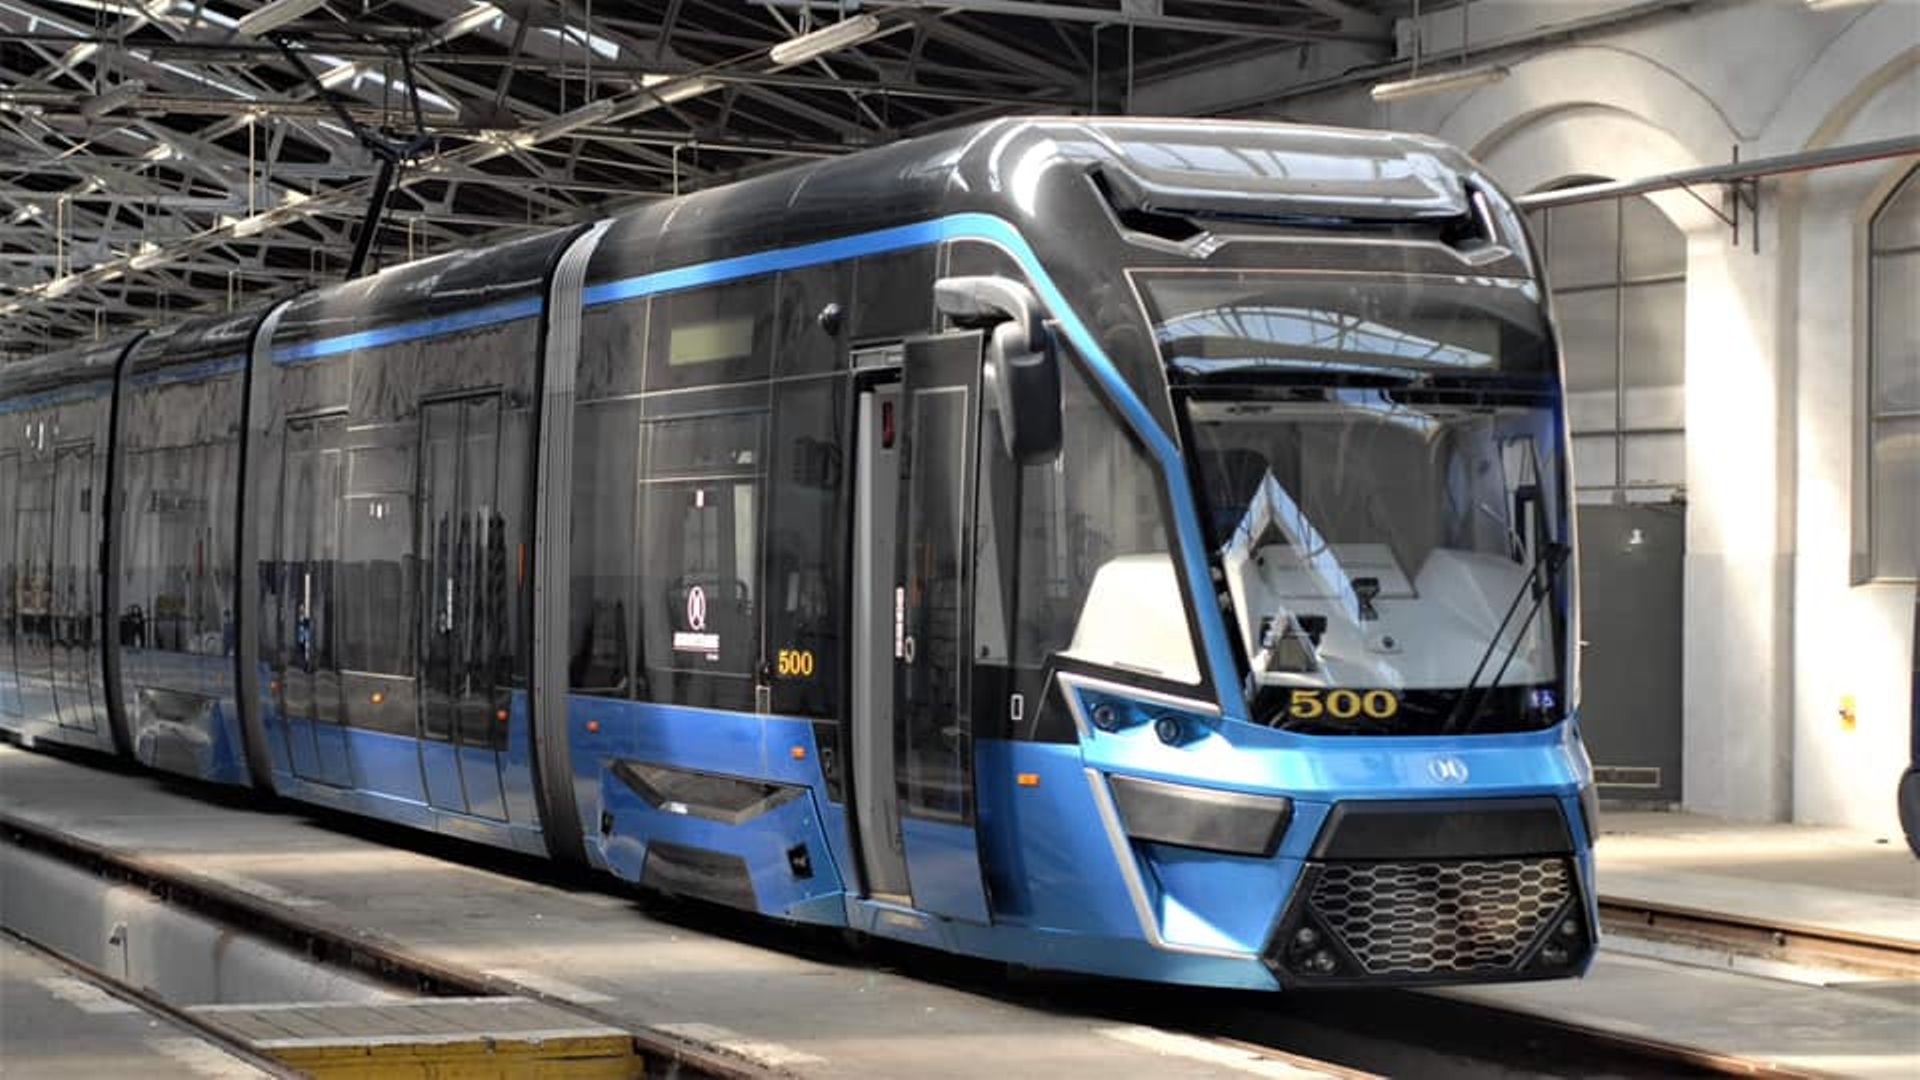 MPK Wrocław rezygnuje z zakupu kolejnych 30 nowych tramwajów